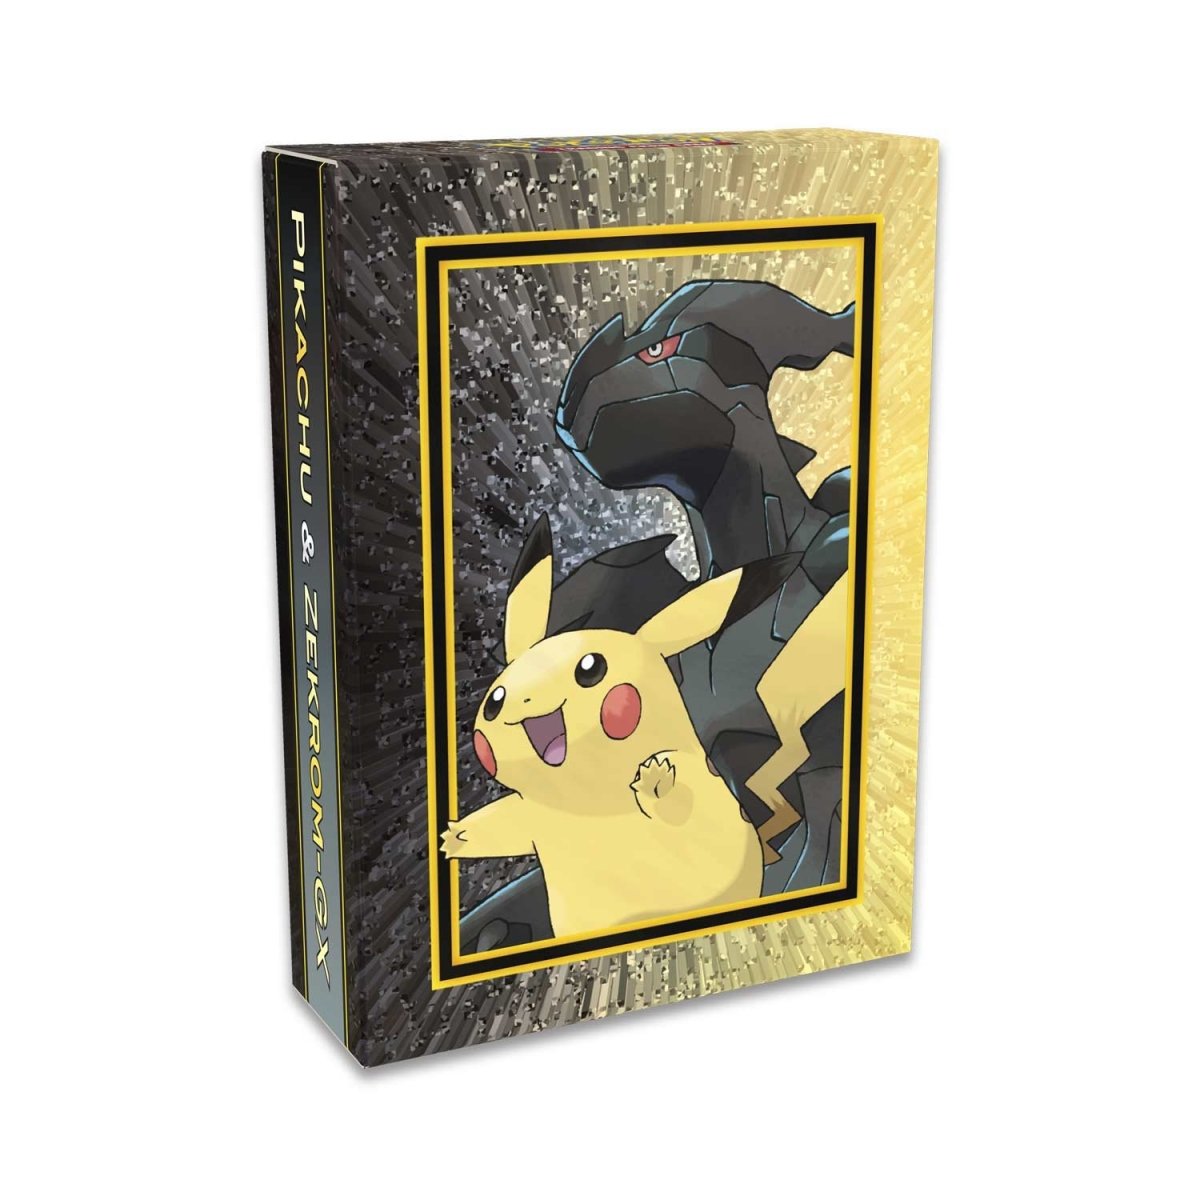 Pikachu E Zekrom GX Pokémon Carta Em Português 33/181 - Lista Kids